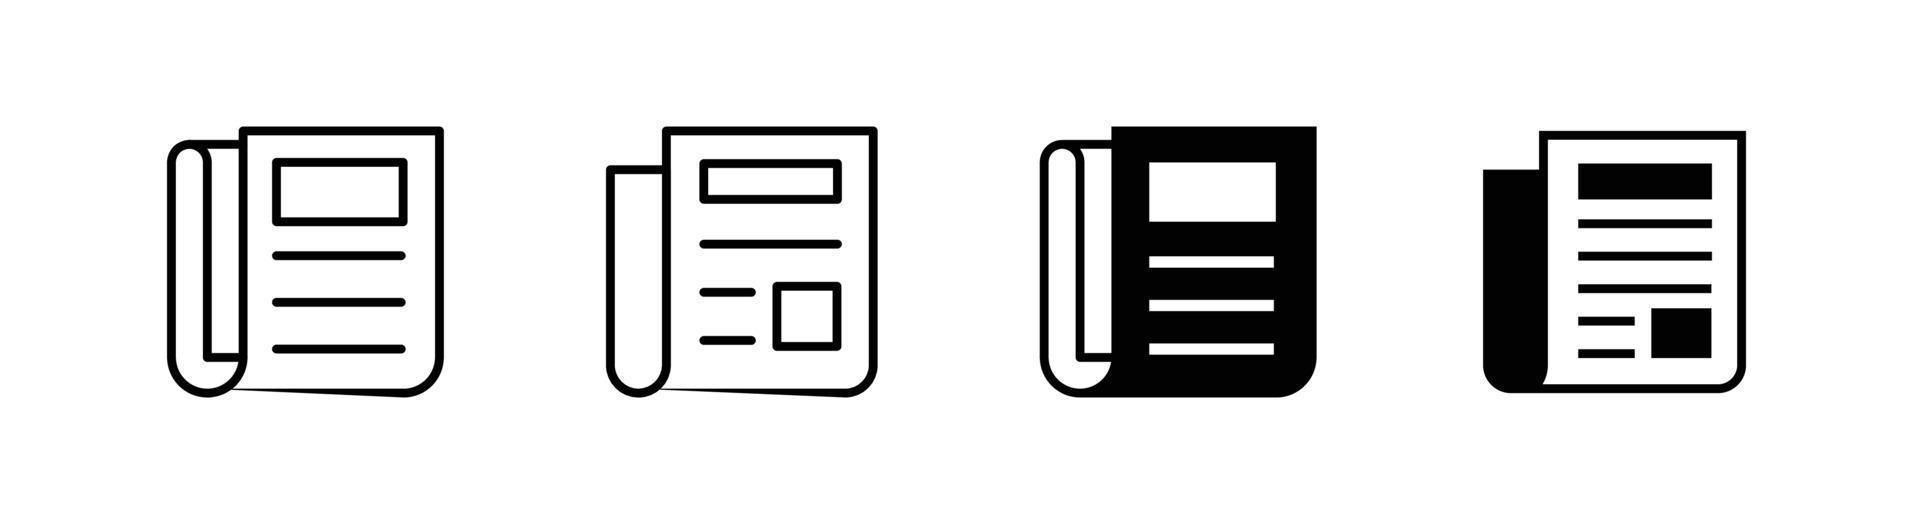 elemento de design de ícone de jornal adequado para sites, design de impressão ou aplicativo vetor